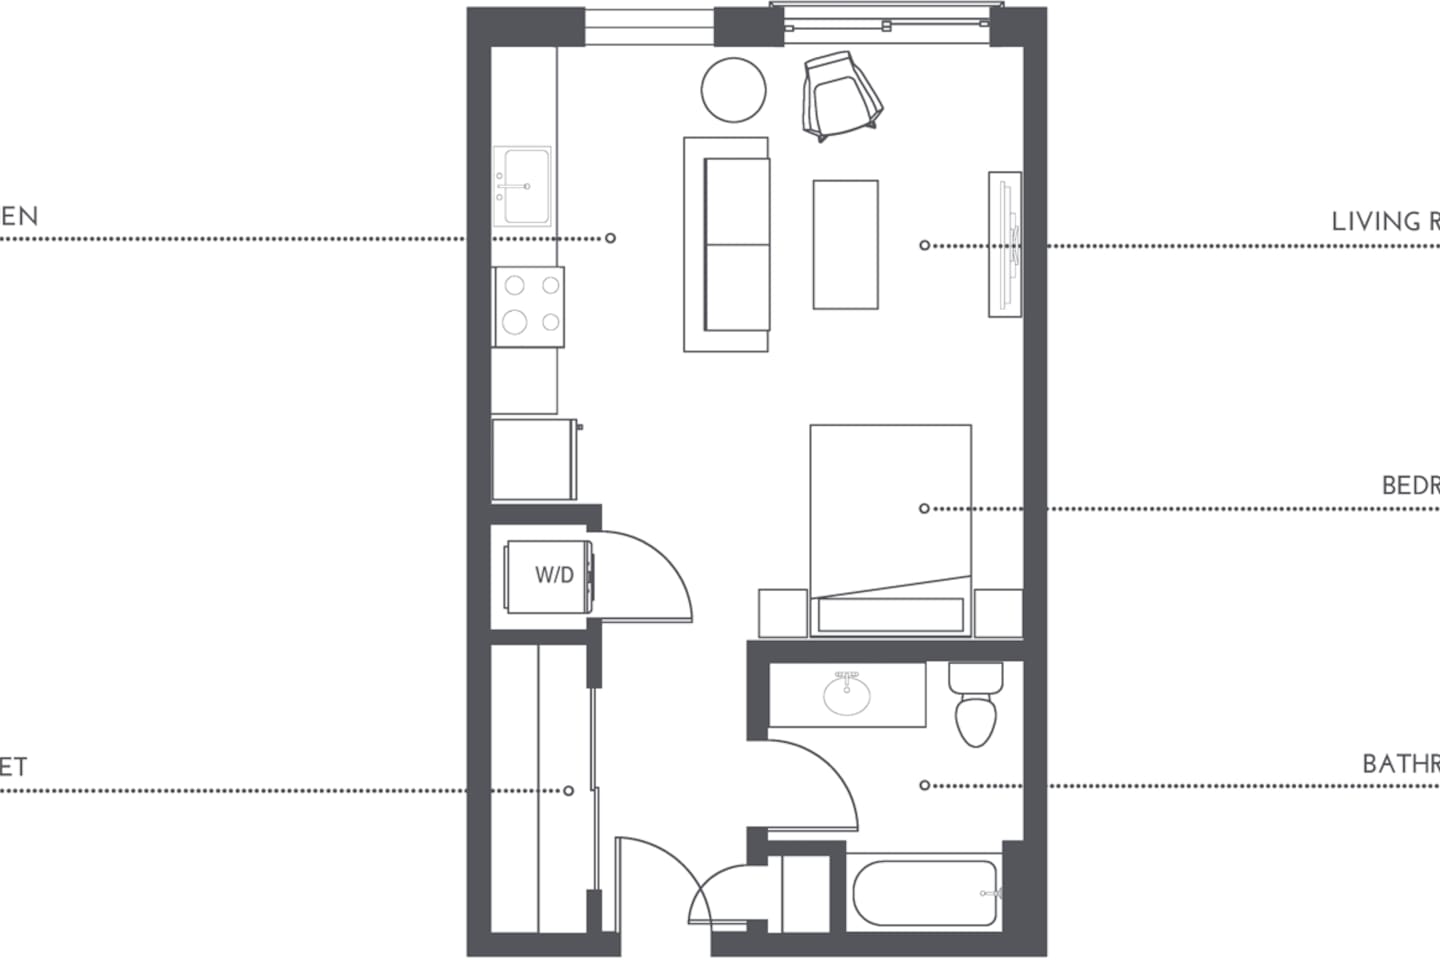 Floorplan diagram for S1, showing Studio